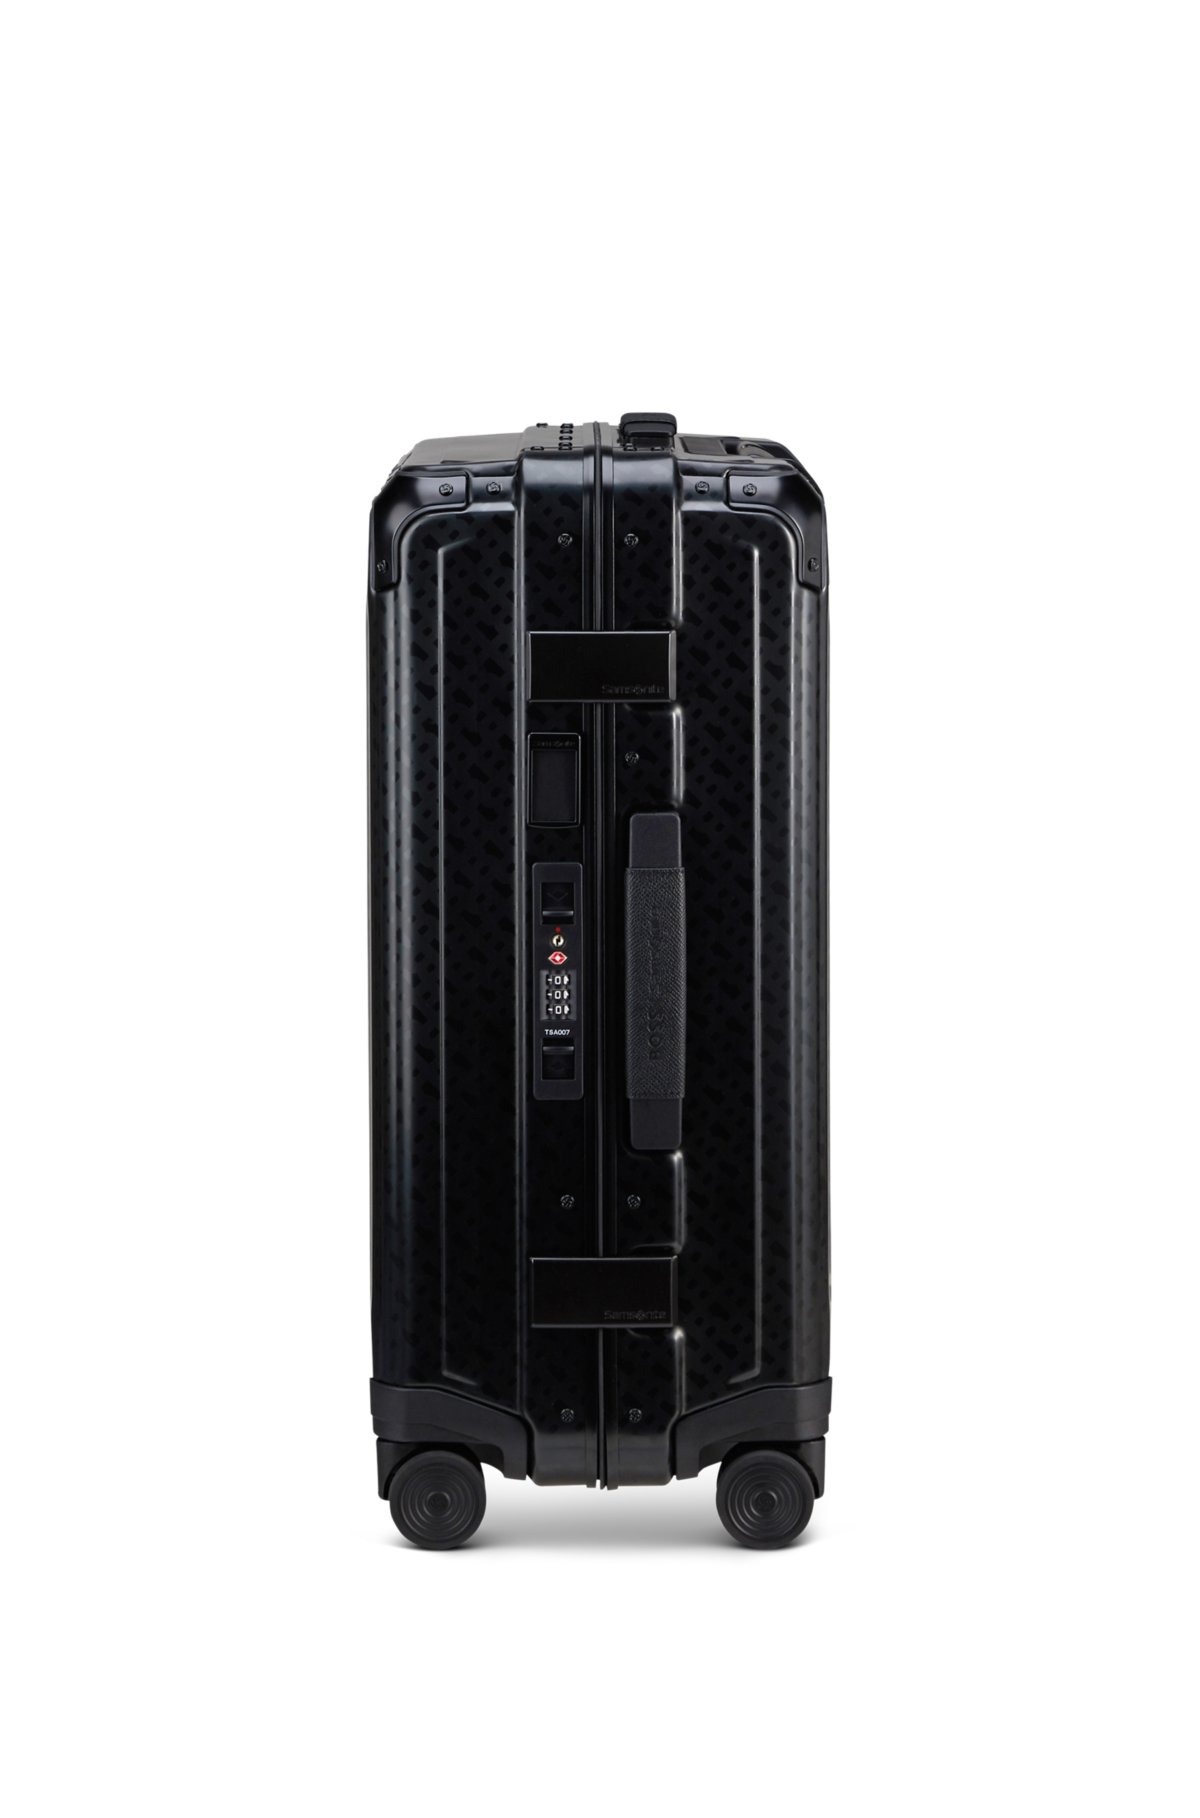 BOSS | Samsonite anodized aluminium cabin-size suitcase, Black